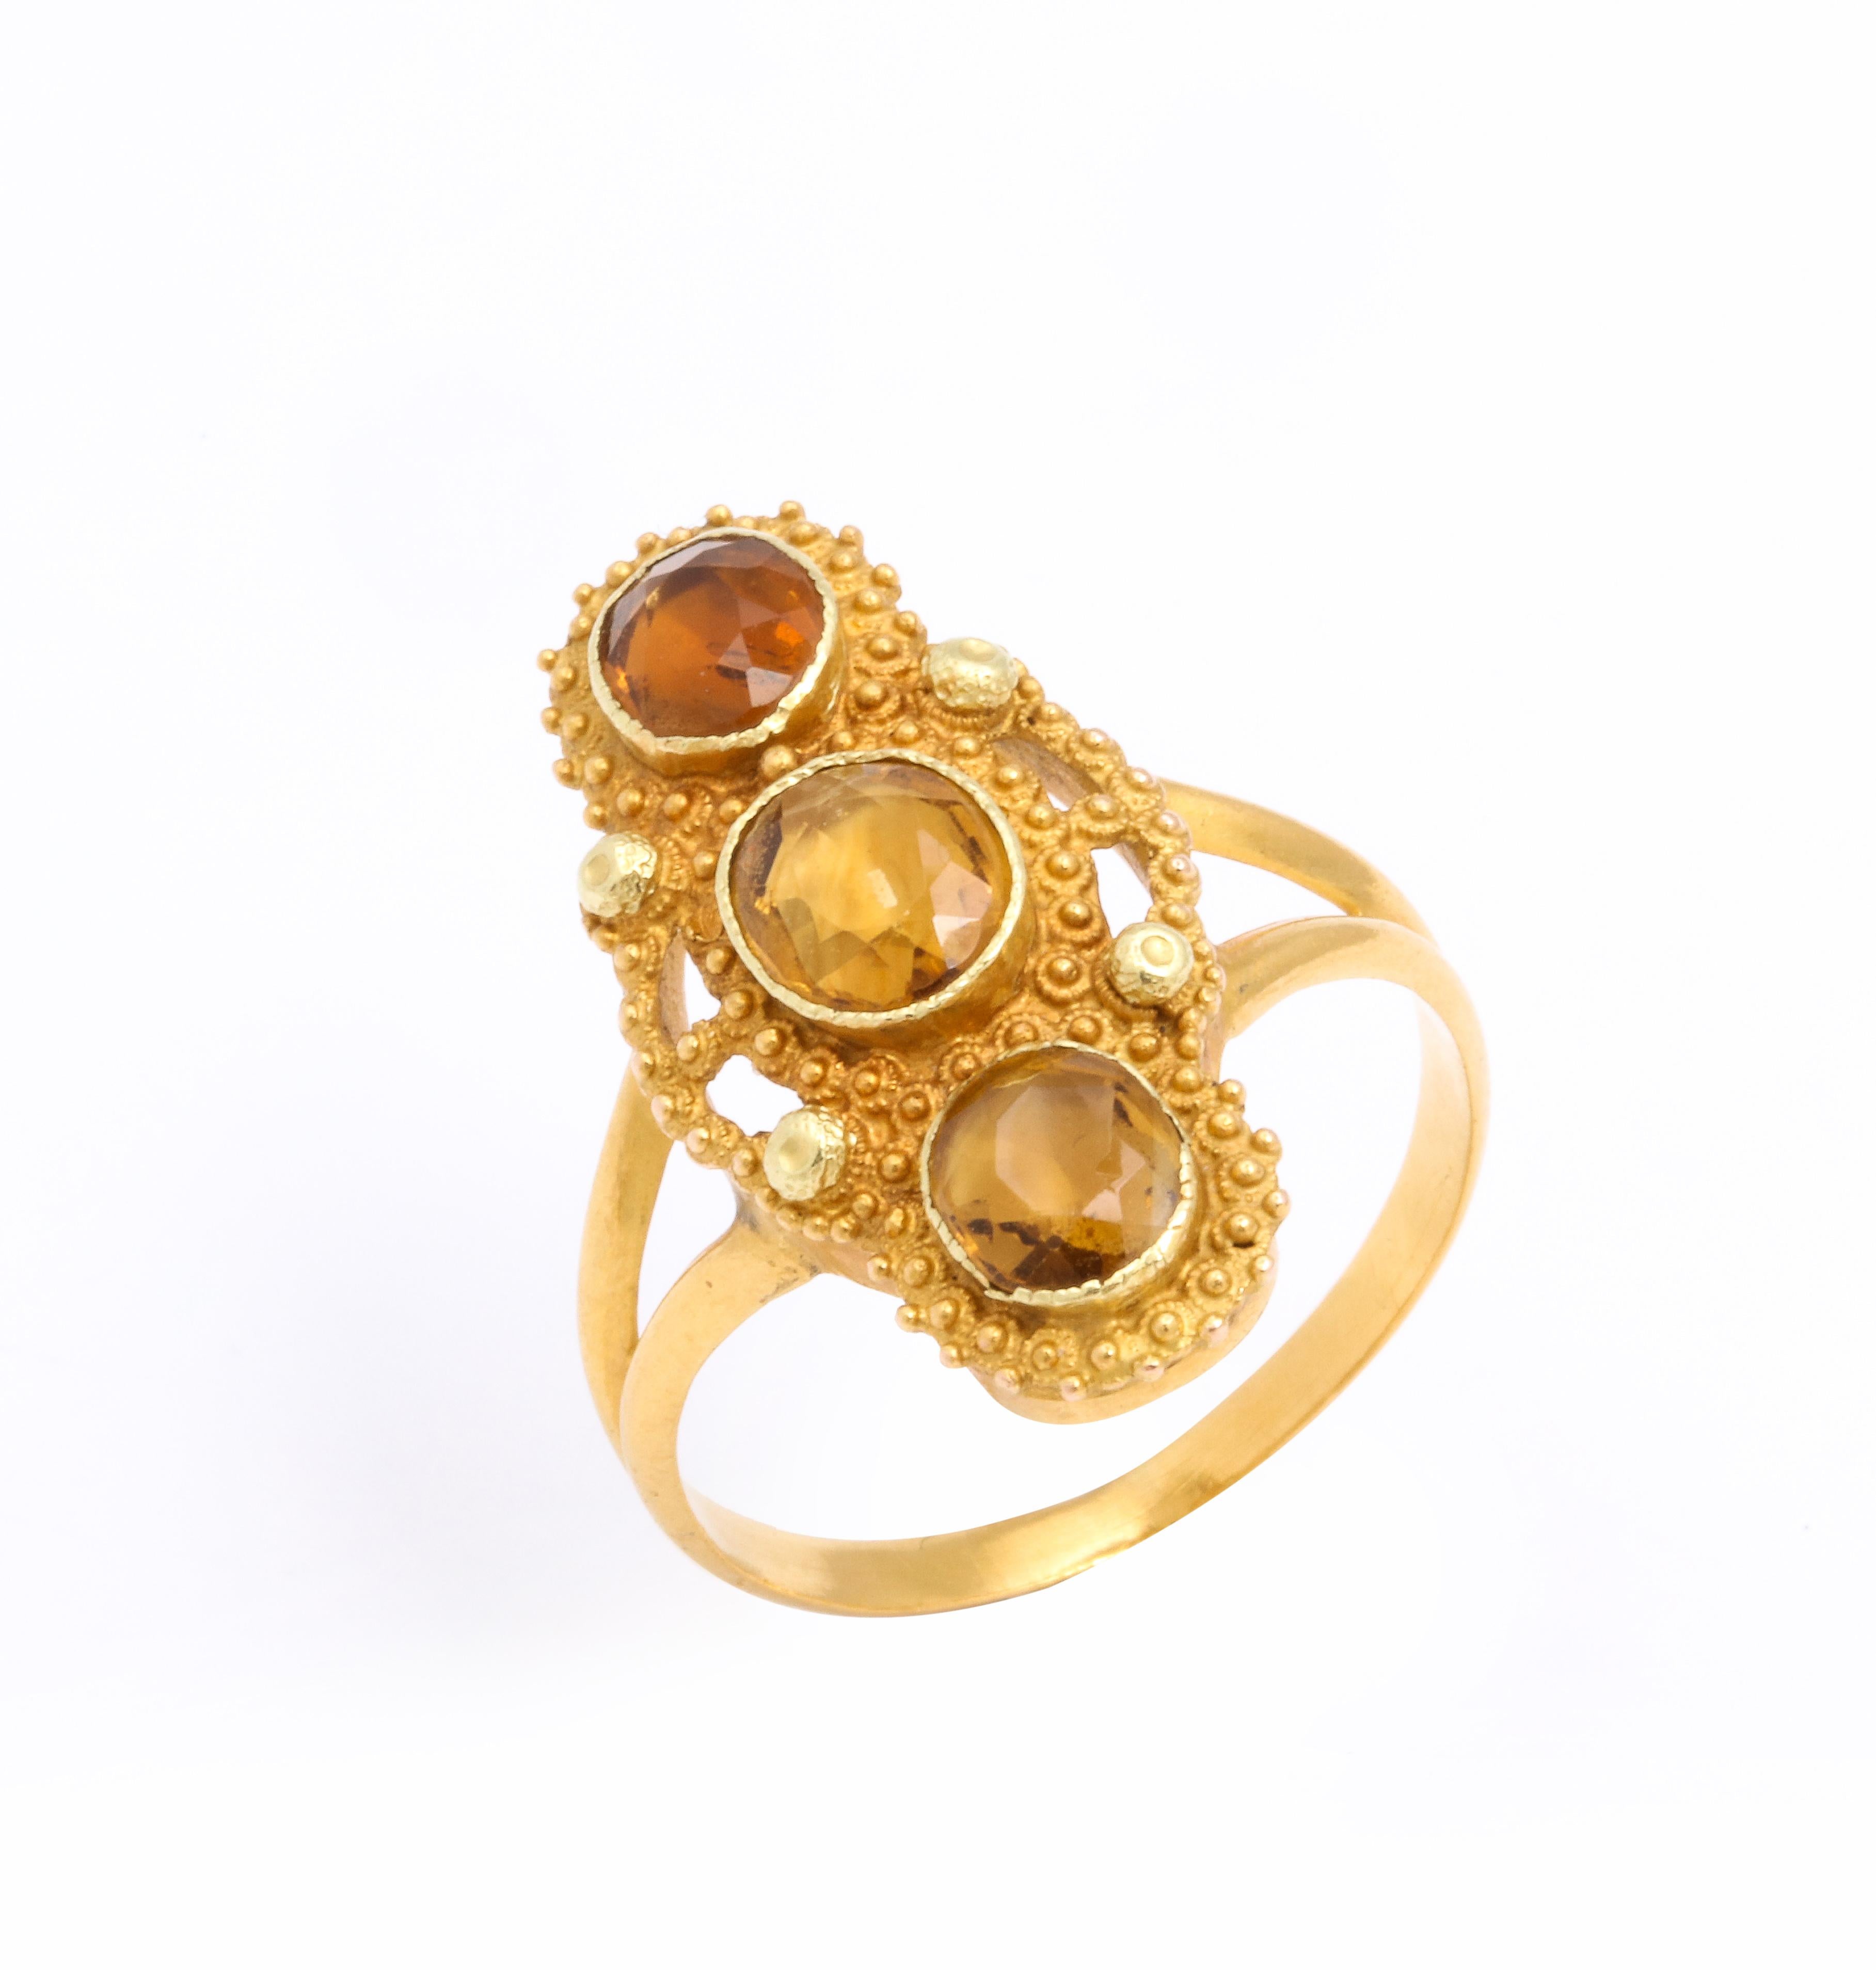 Drei ovale Topas-Edelsteine sind in diesem georgischen Ring vertikal in 18-karätiges Gold gefasst. Die Edelsteine sehen aus, als wären sie wie Honigtropfen auf dieser Fassung mit drei Steinen aufgespießt. Hervorragende Goldarbeit zeichnet sich in